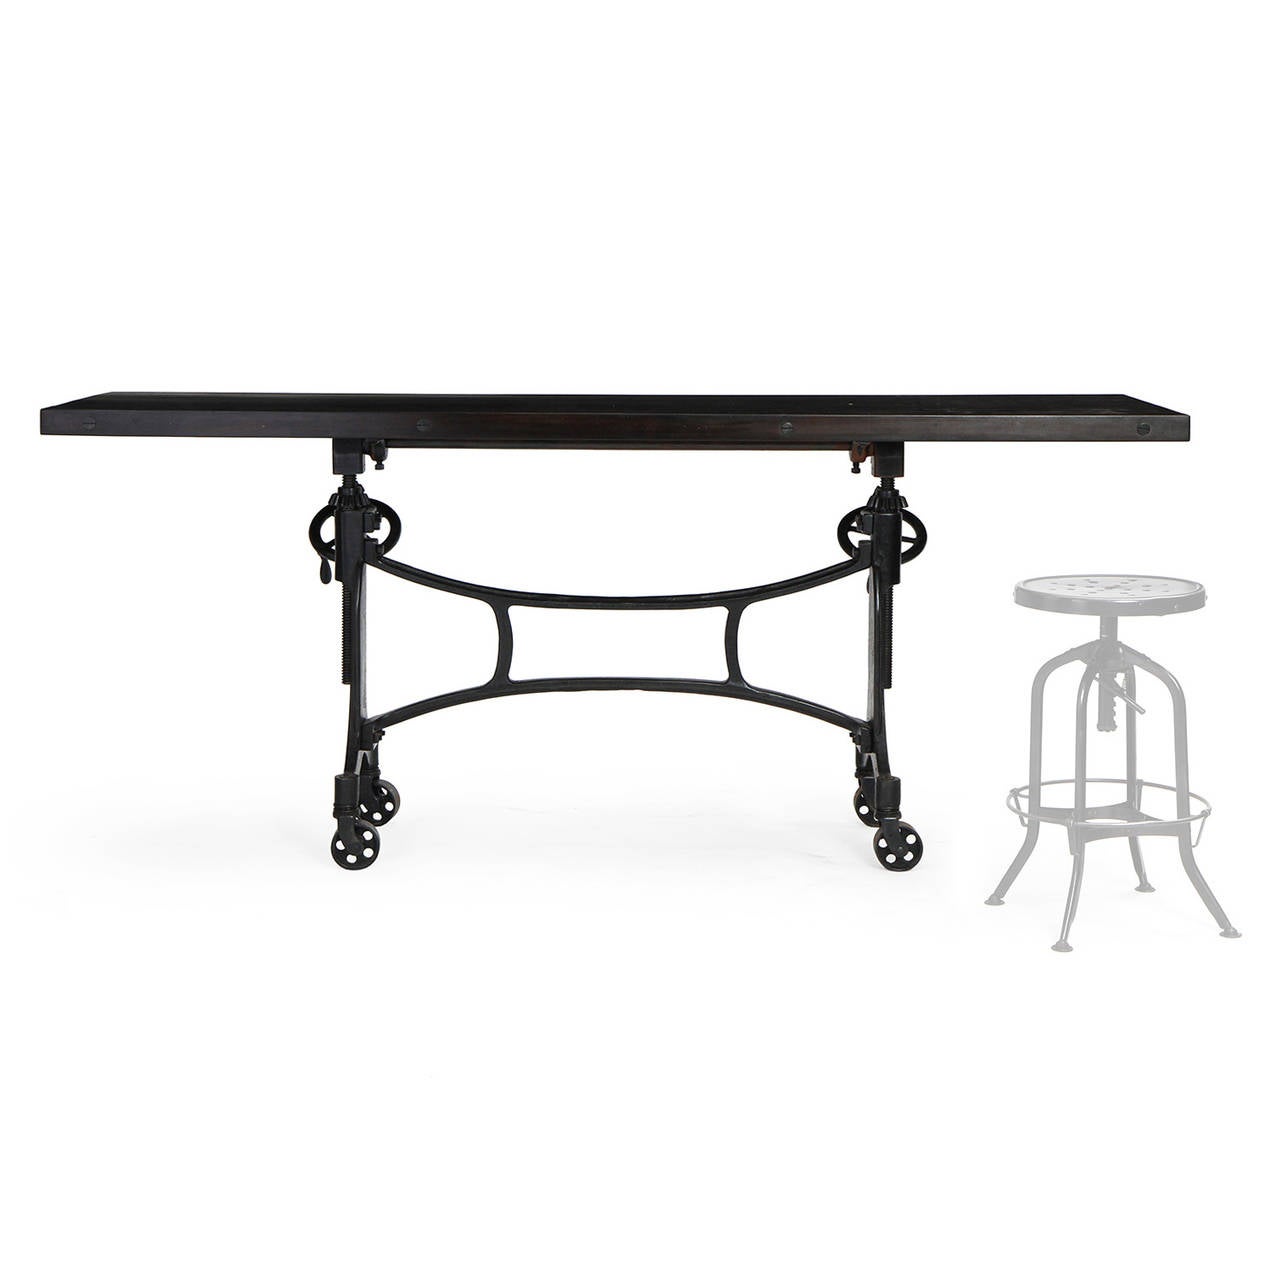 Ein verstellbarer Industrietisch auf Rollen mit einem architektonischen Gusseisenrahmen, der eine geölte Mahagoni-Platte trägt. Die Höhe wird über ein Paar Handkurbeln gesteuert, und die Tischplatte kann ebenfalls gekippt werden.